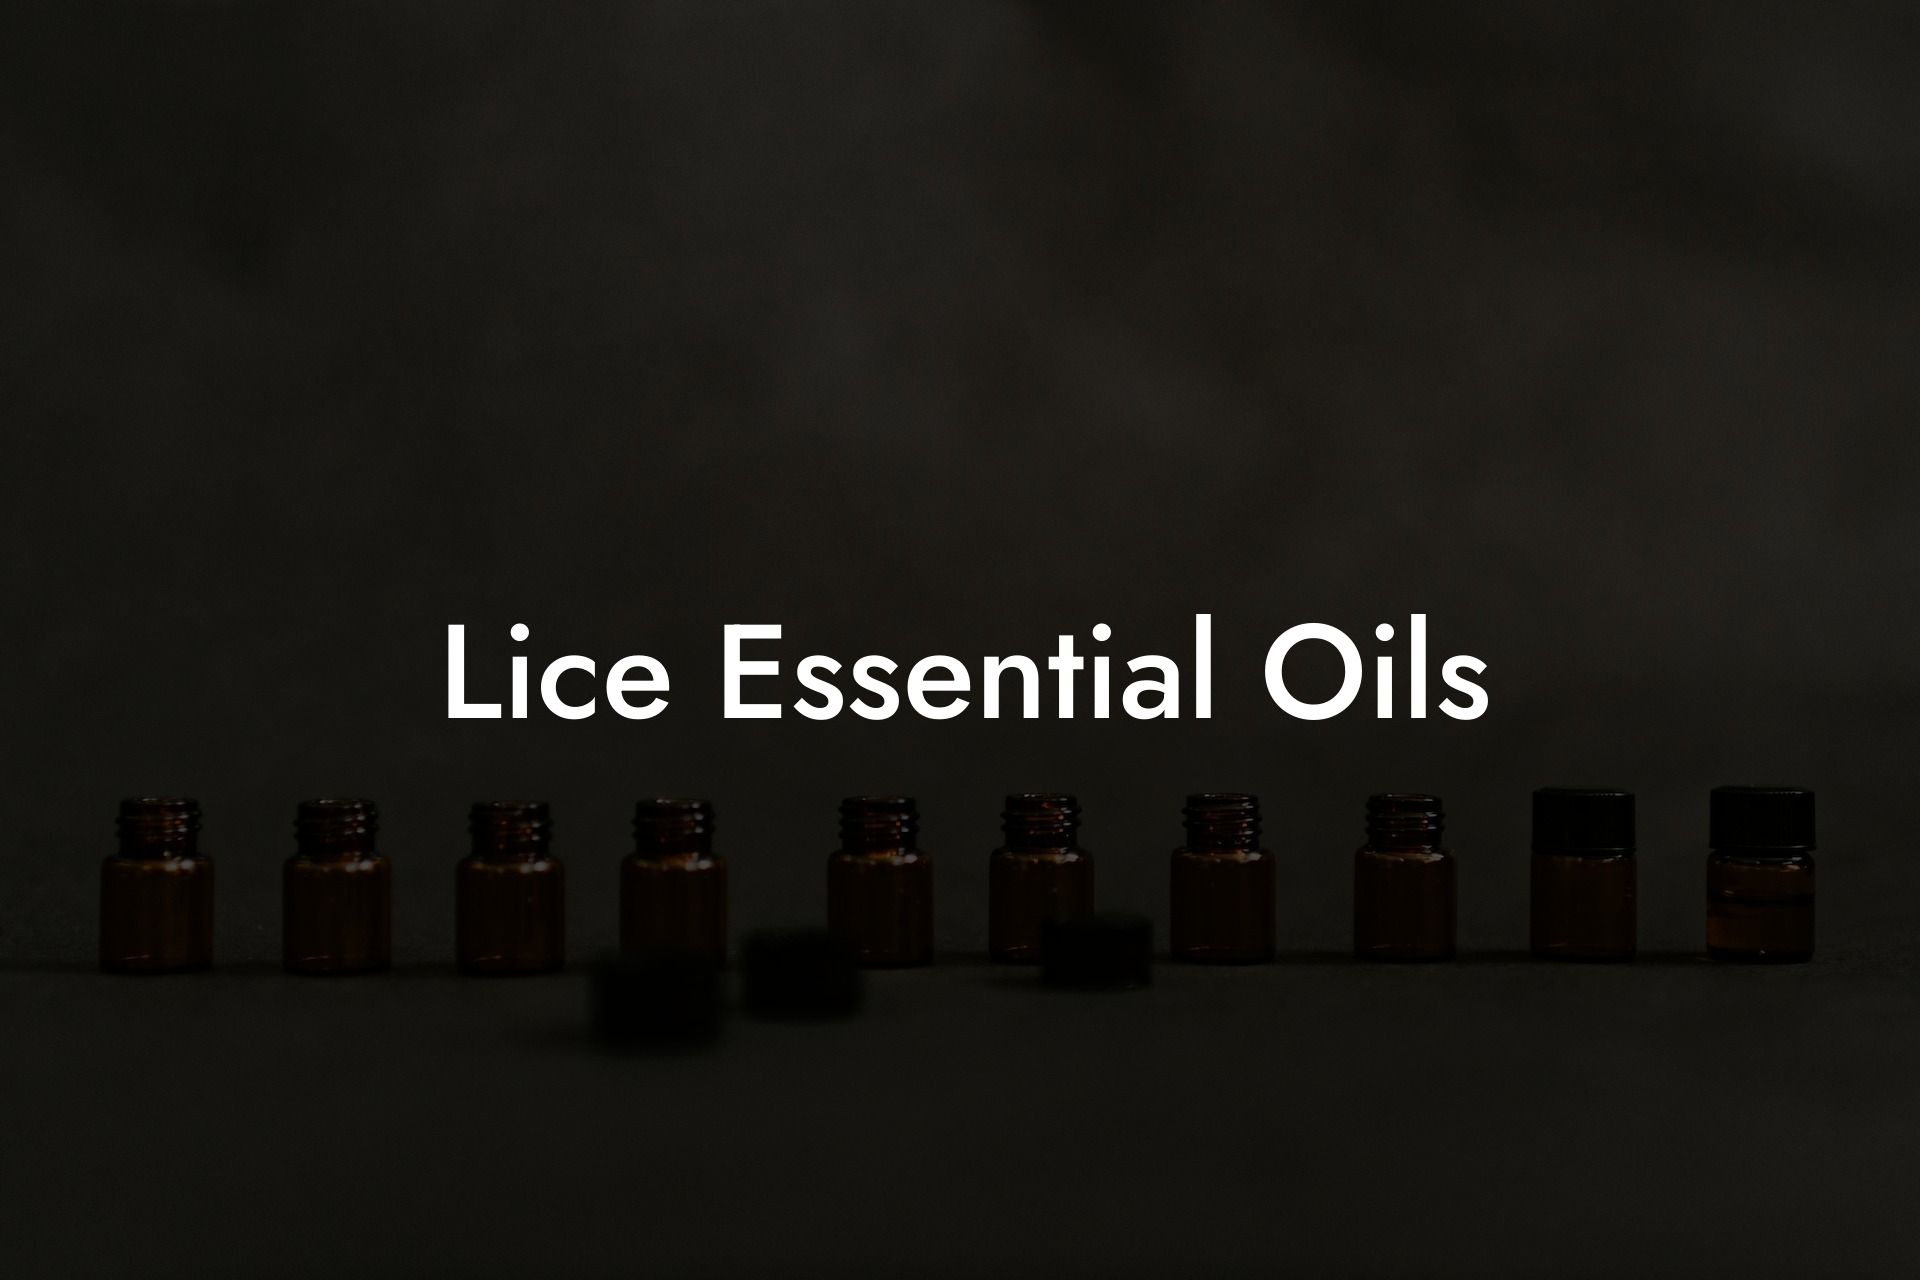 Lice Essential Oils